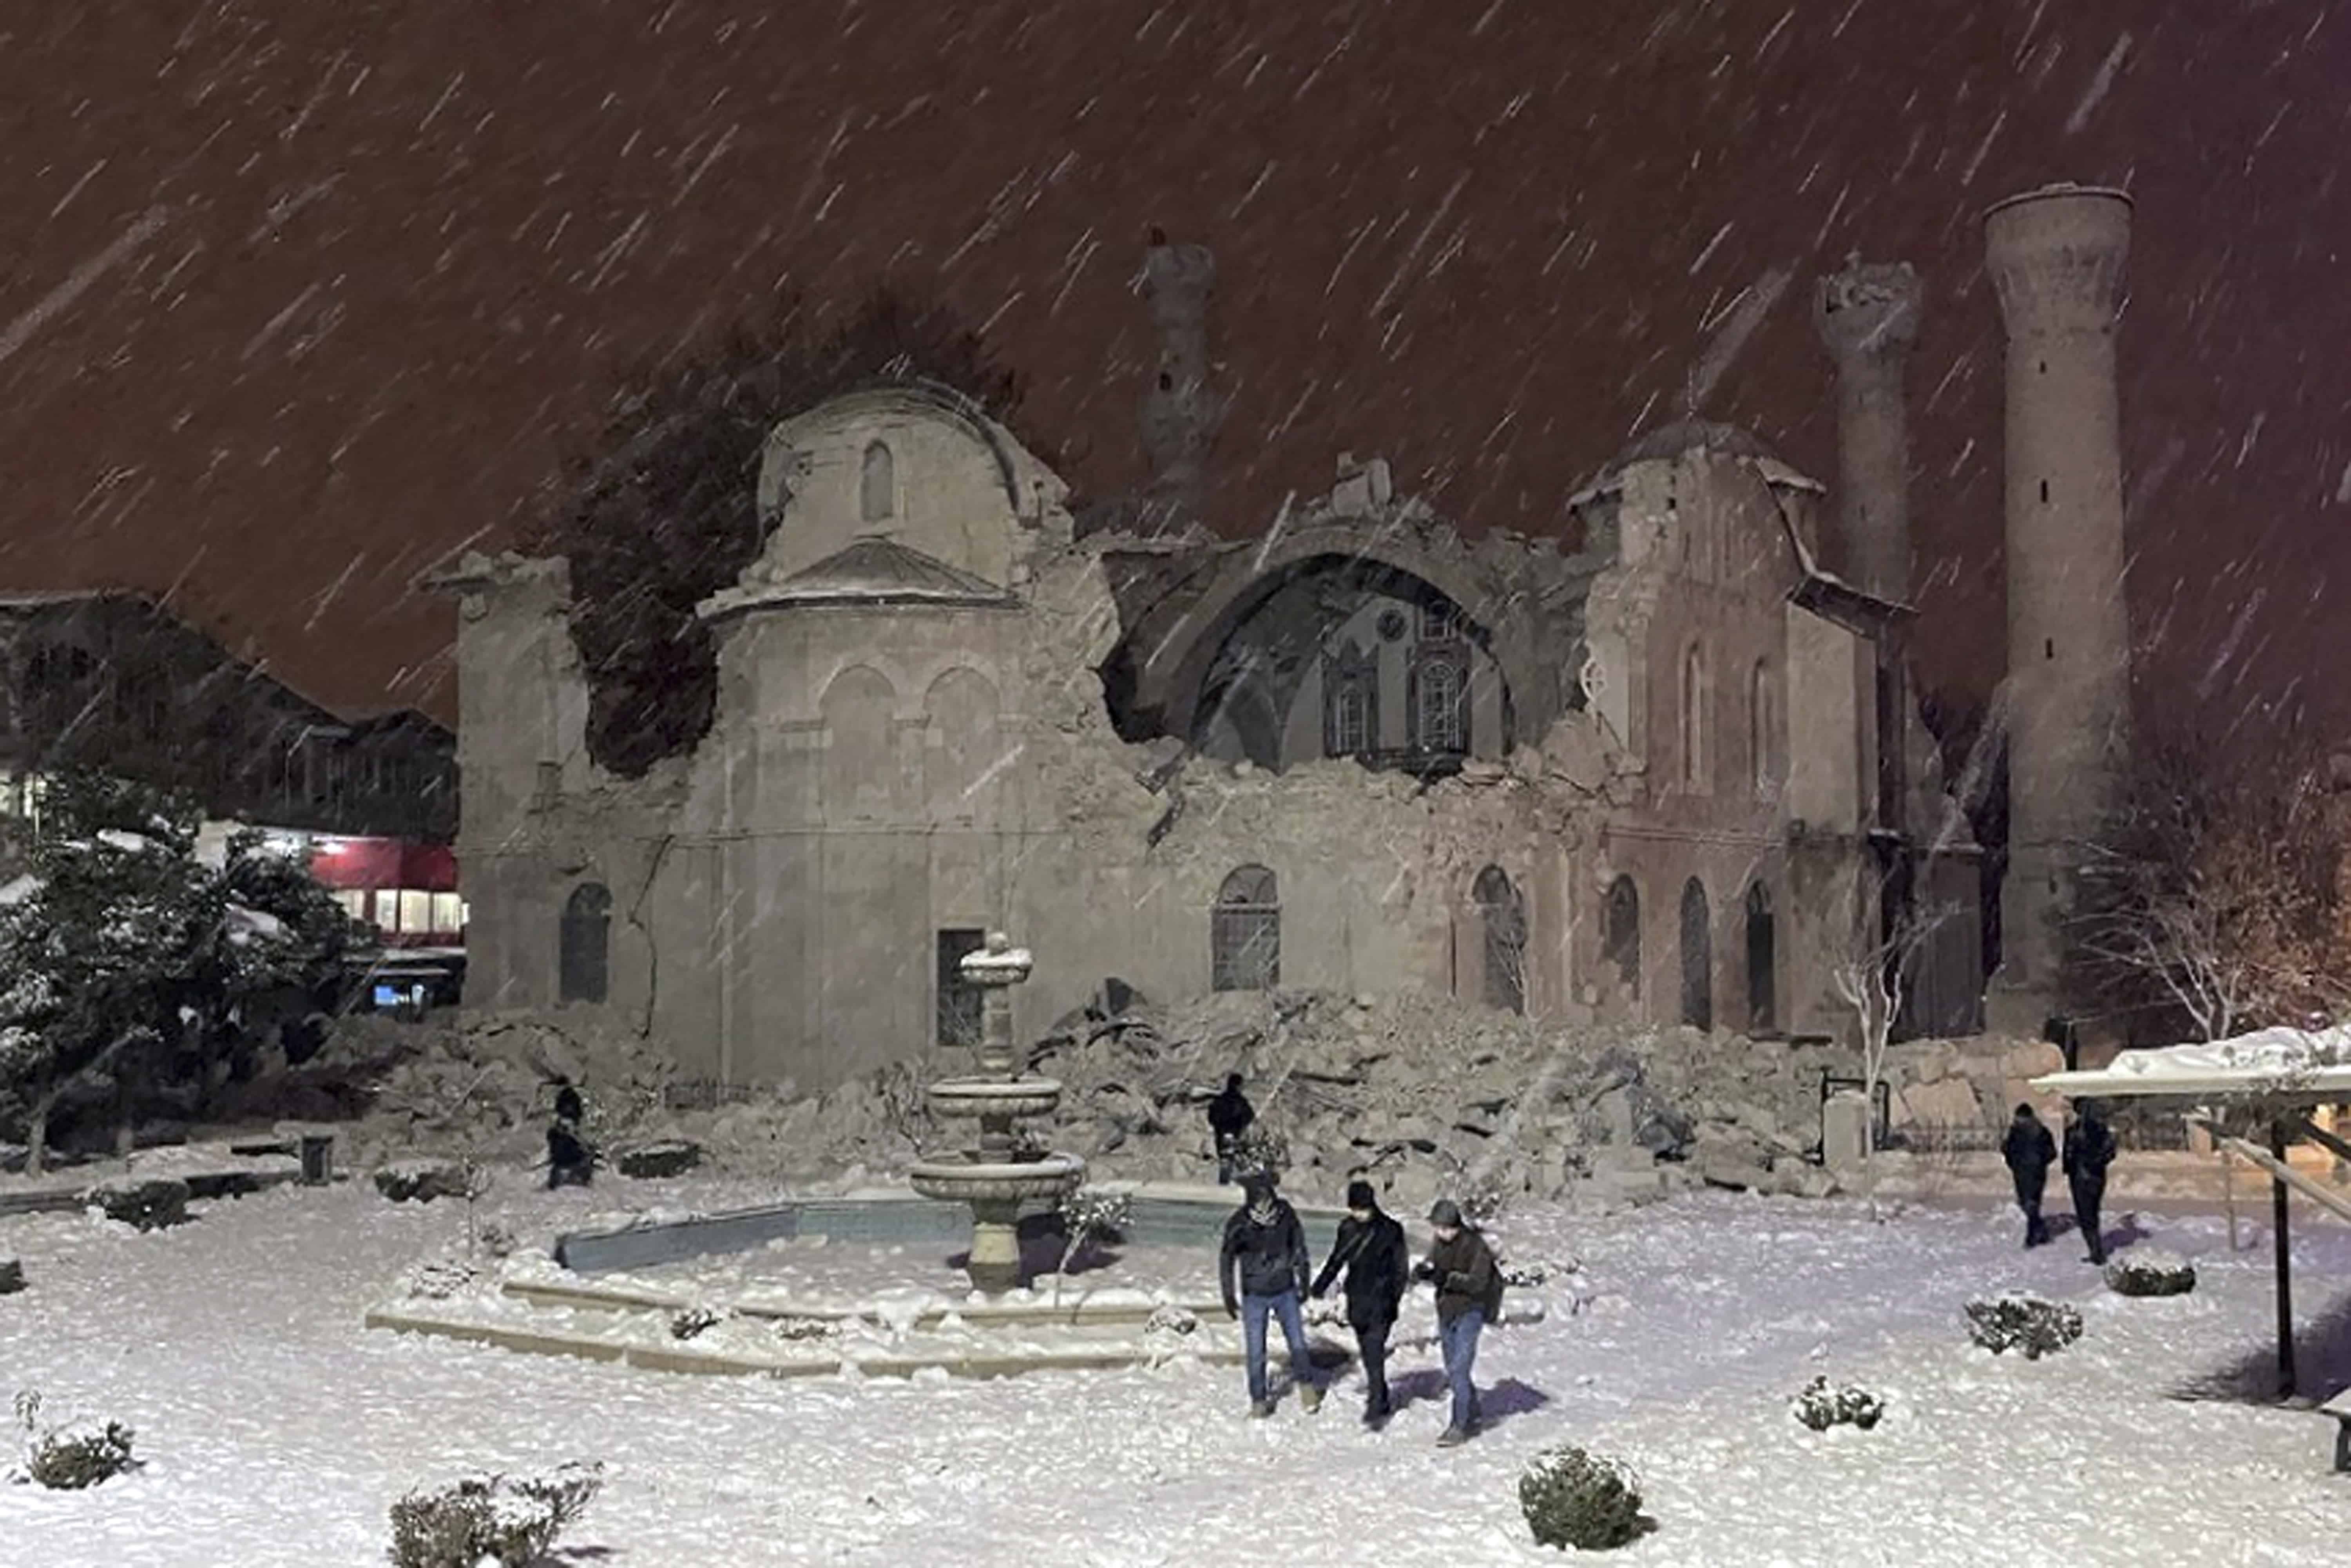 La gente camina junto a una mezquita destruida por un terremoto en Malatya, Turquía, el lunes 6 de febrero de 2023. Un poderoso sismo derribó varios edificios en el sureste de Turquía y Siria y se temen muchas víctimas.